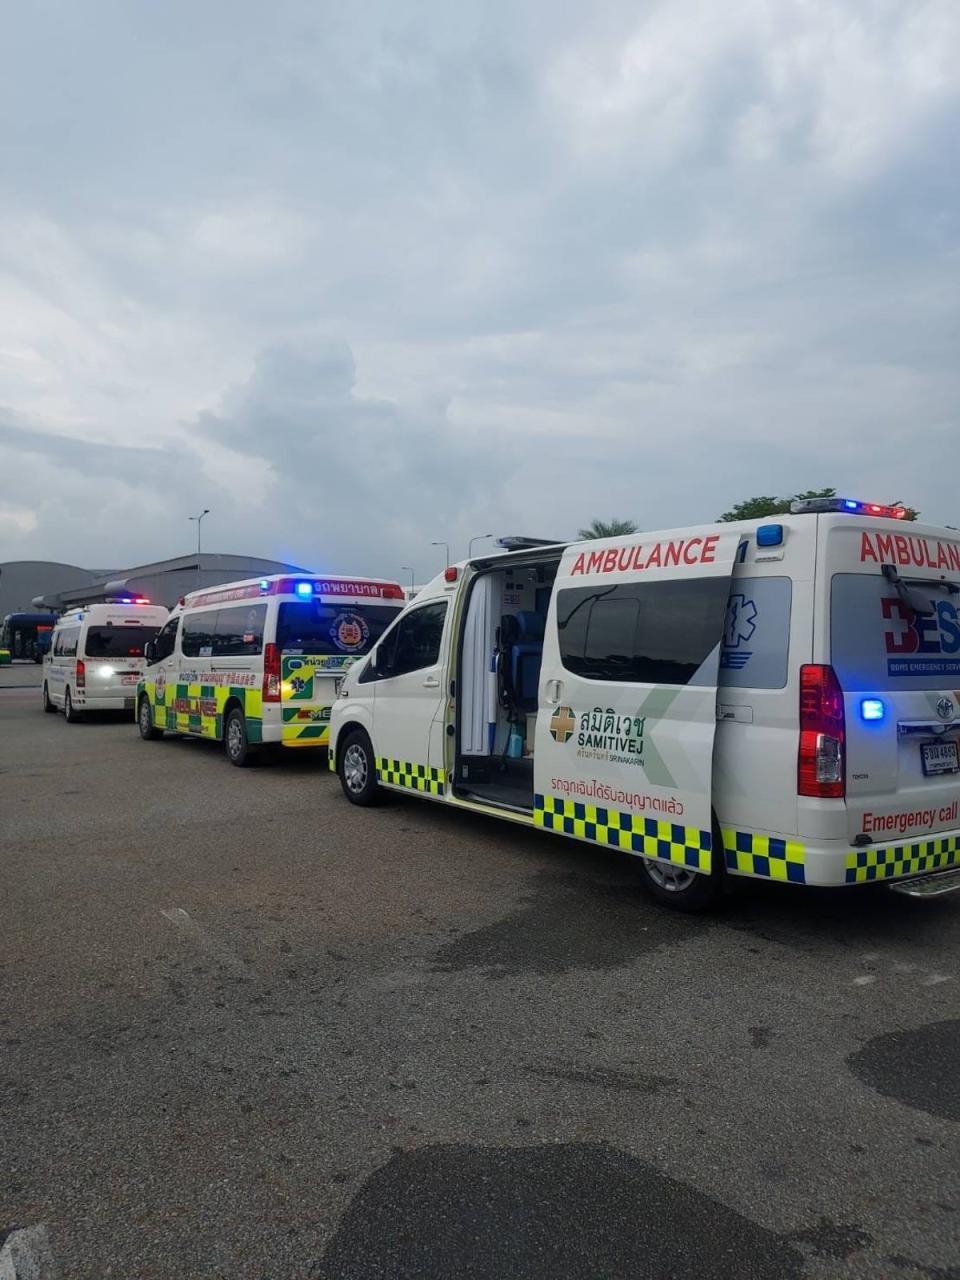 Ambulances at Bangkok airport treating injured passengers (X)